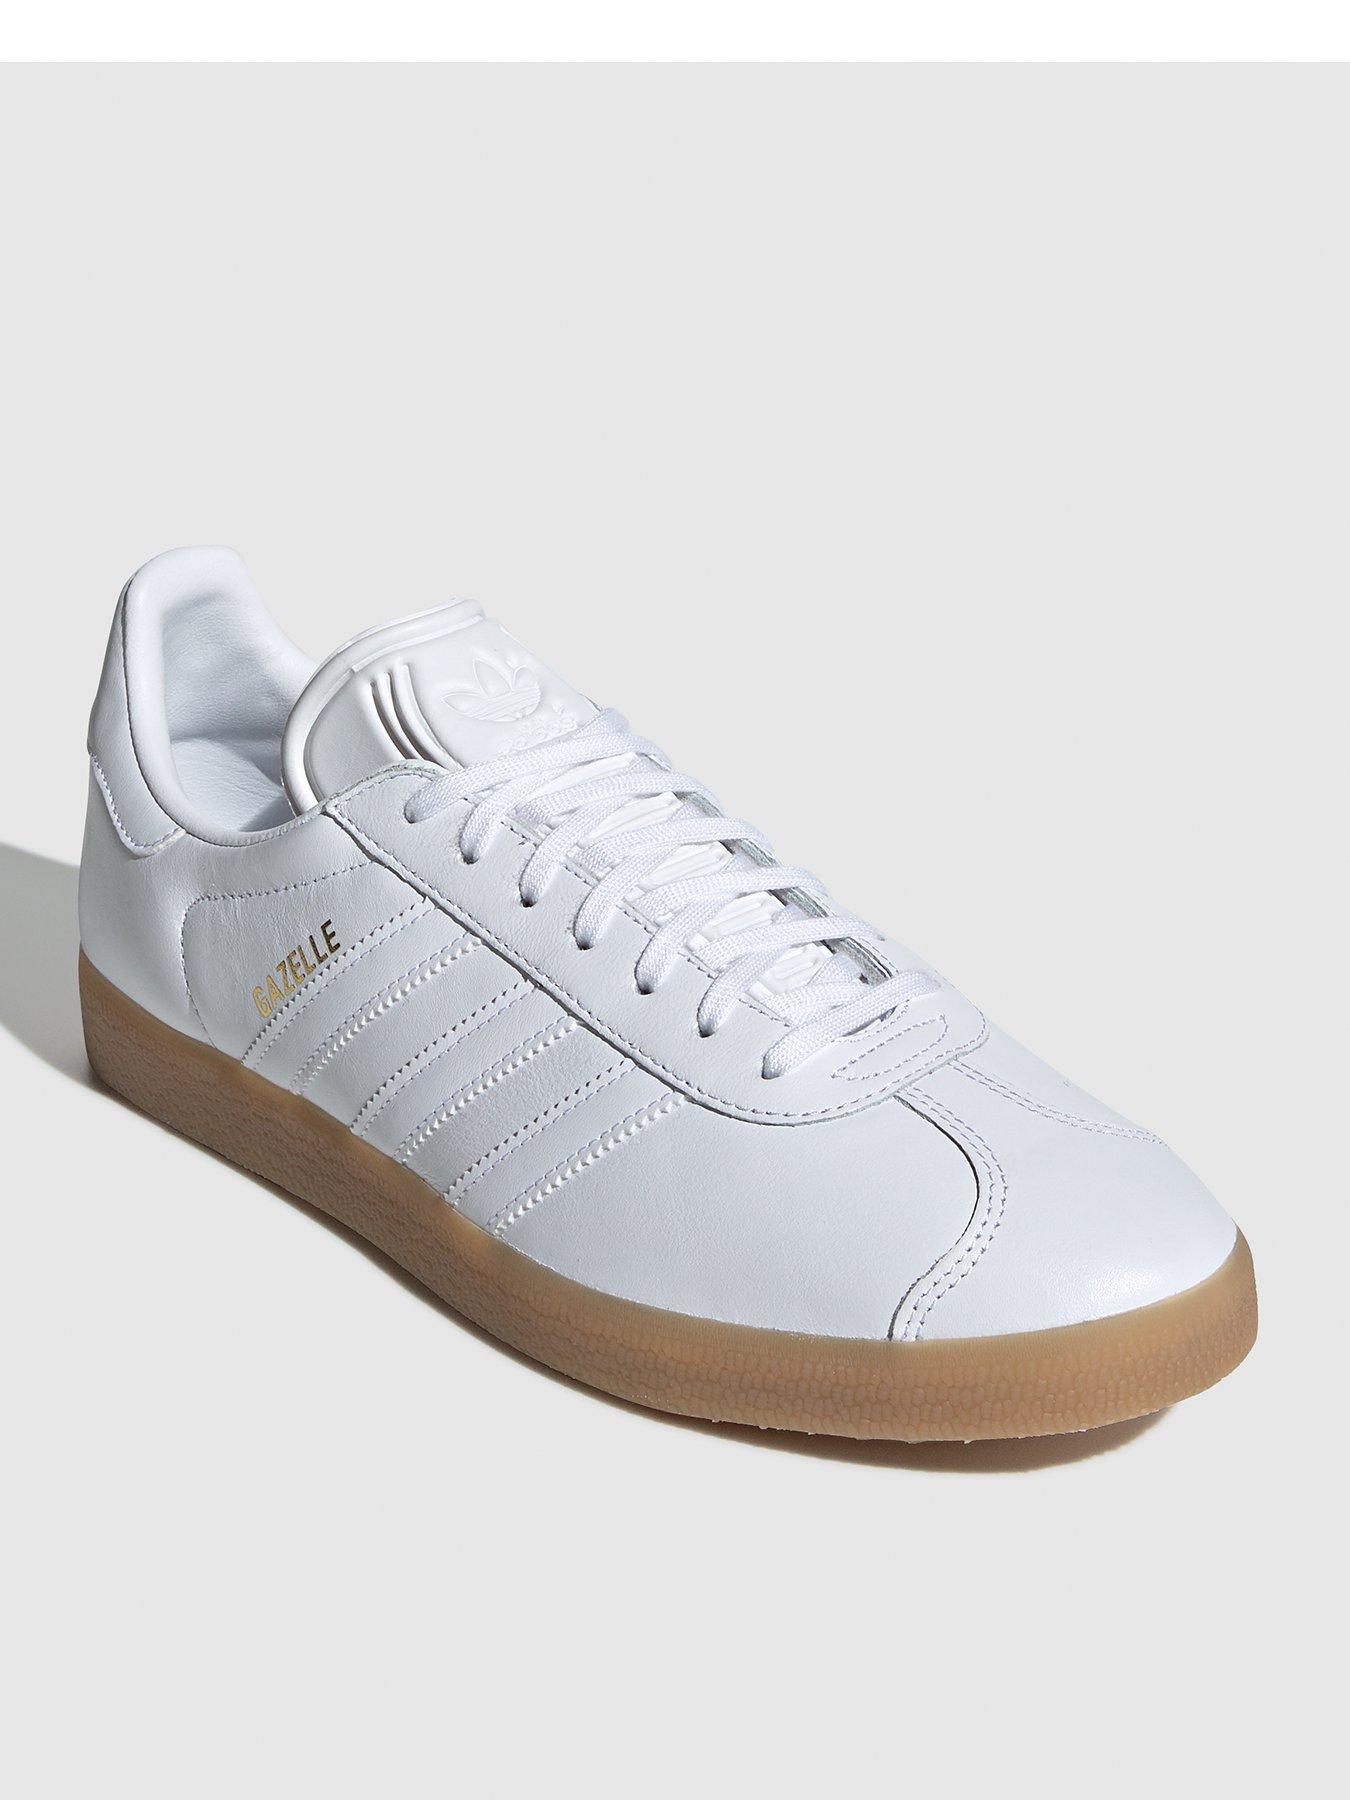 white leather adidas gazelle